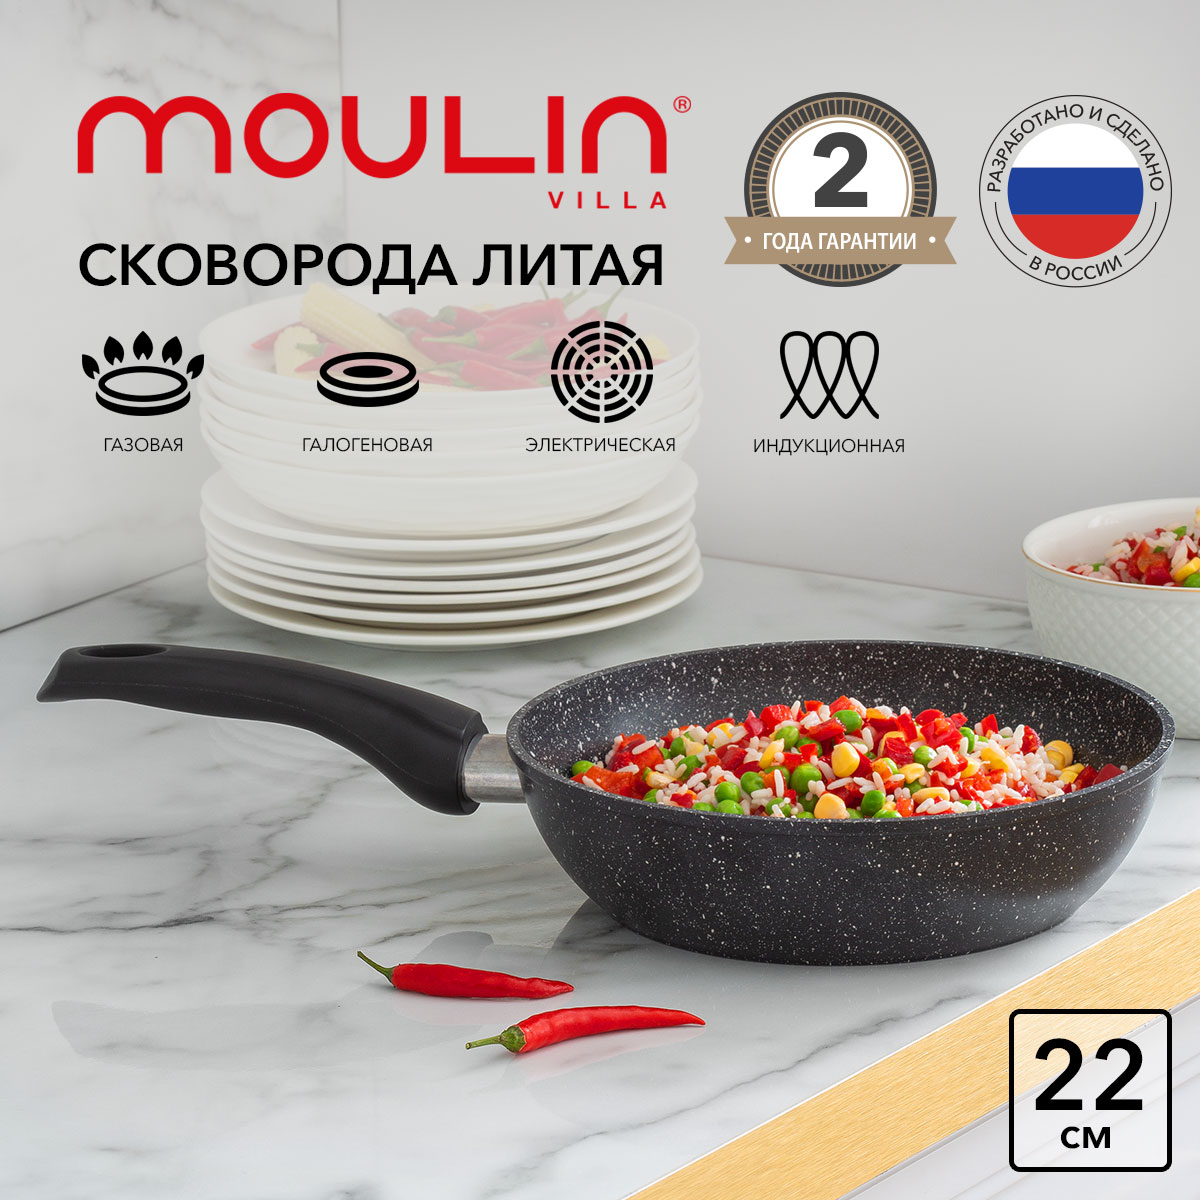 Сковорода антипригарная Moulin Villa Impression TM-22-DI индукция 22 см